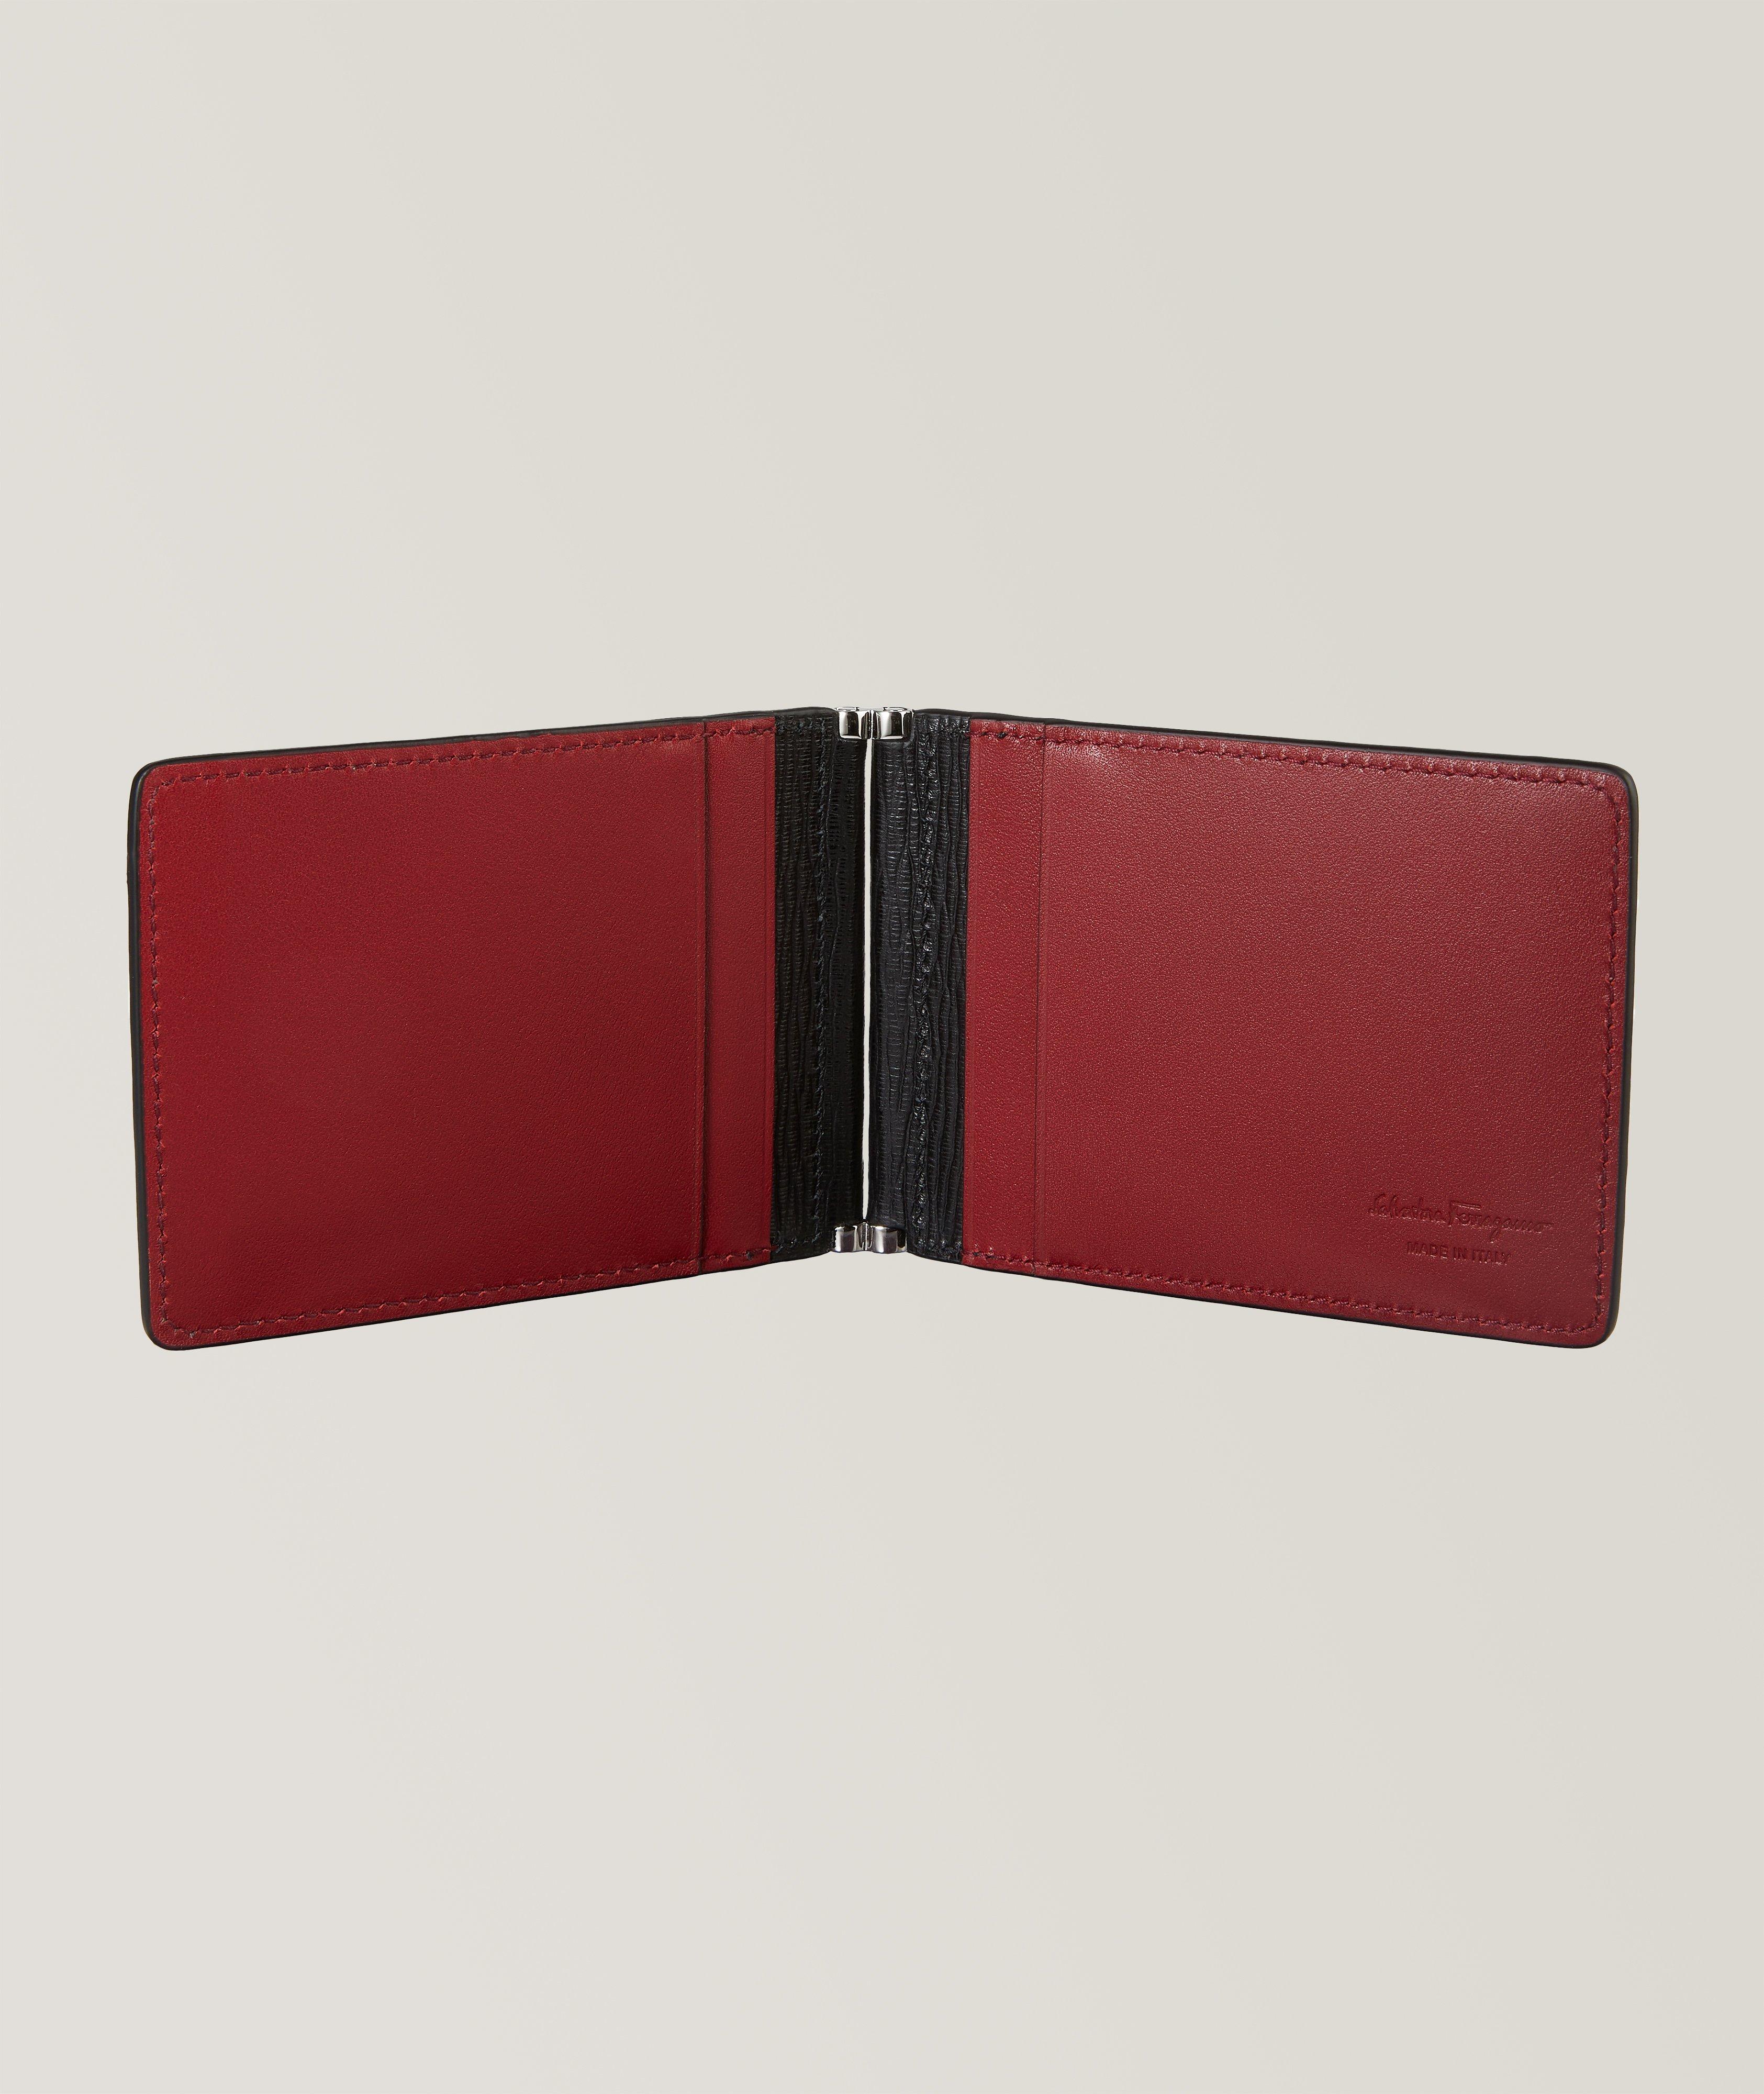 Gancini Revival Leather Folding Cardholder image 1